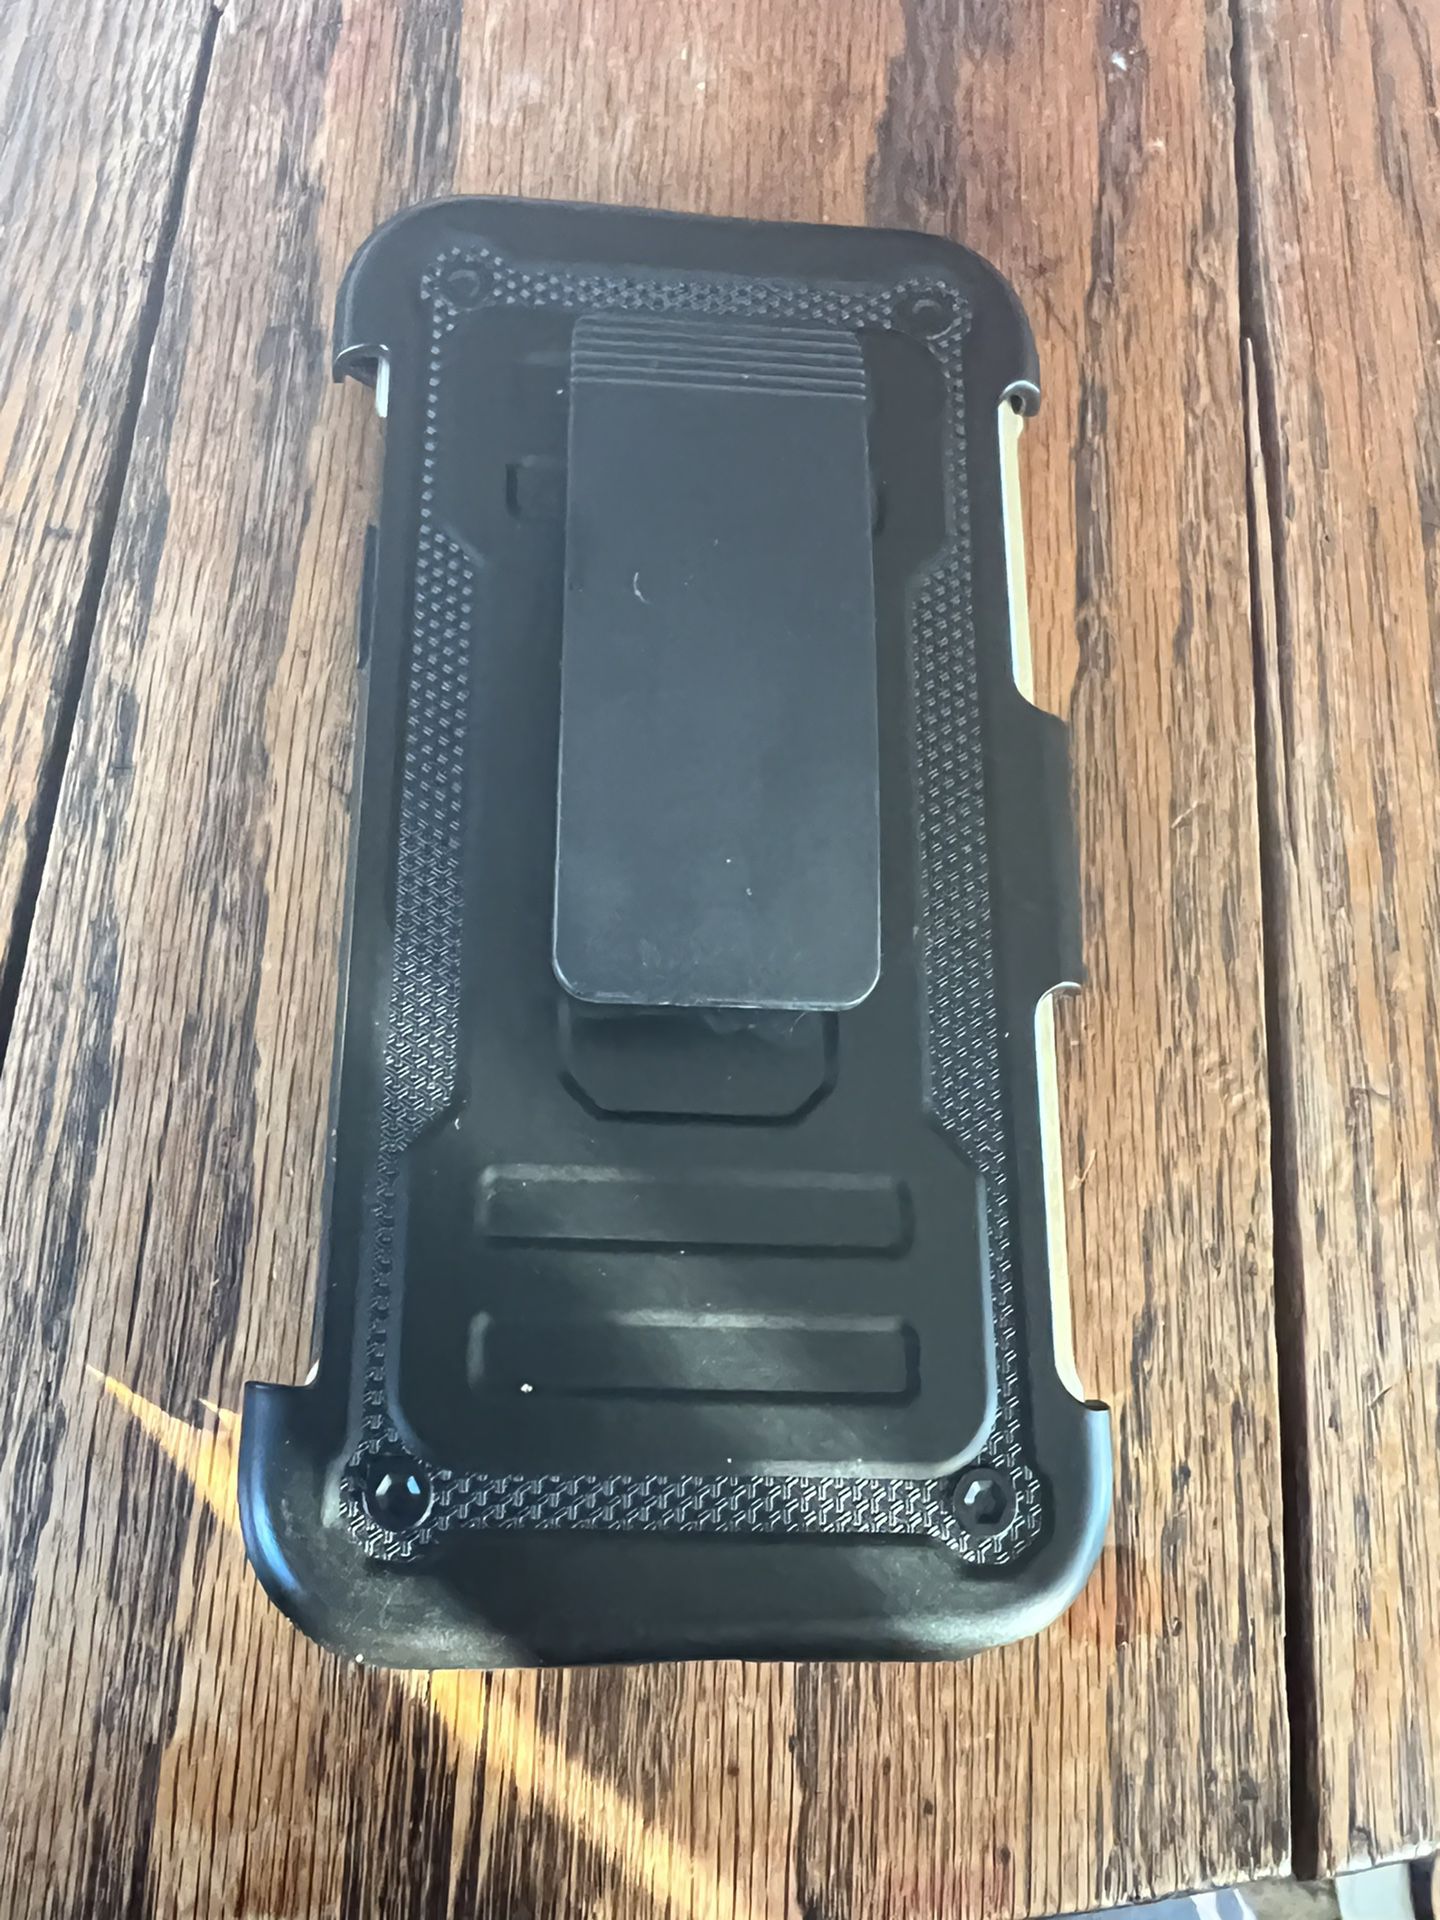 IPhone X Gorilla Case Plus Clip On